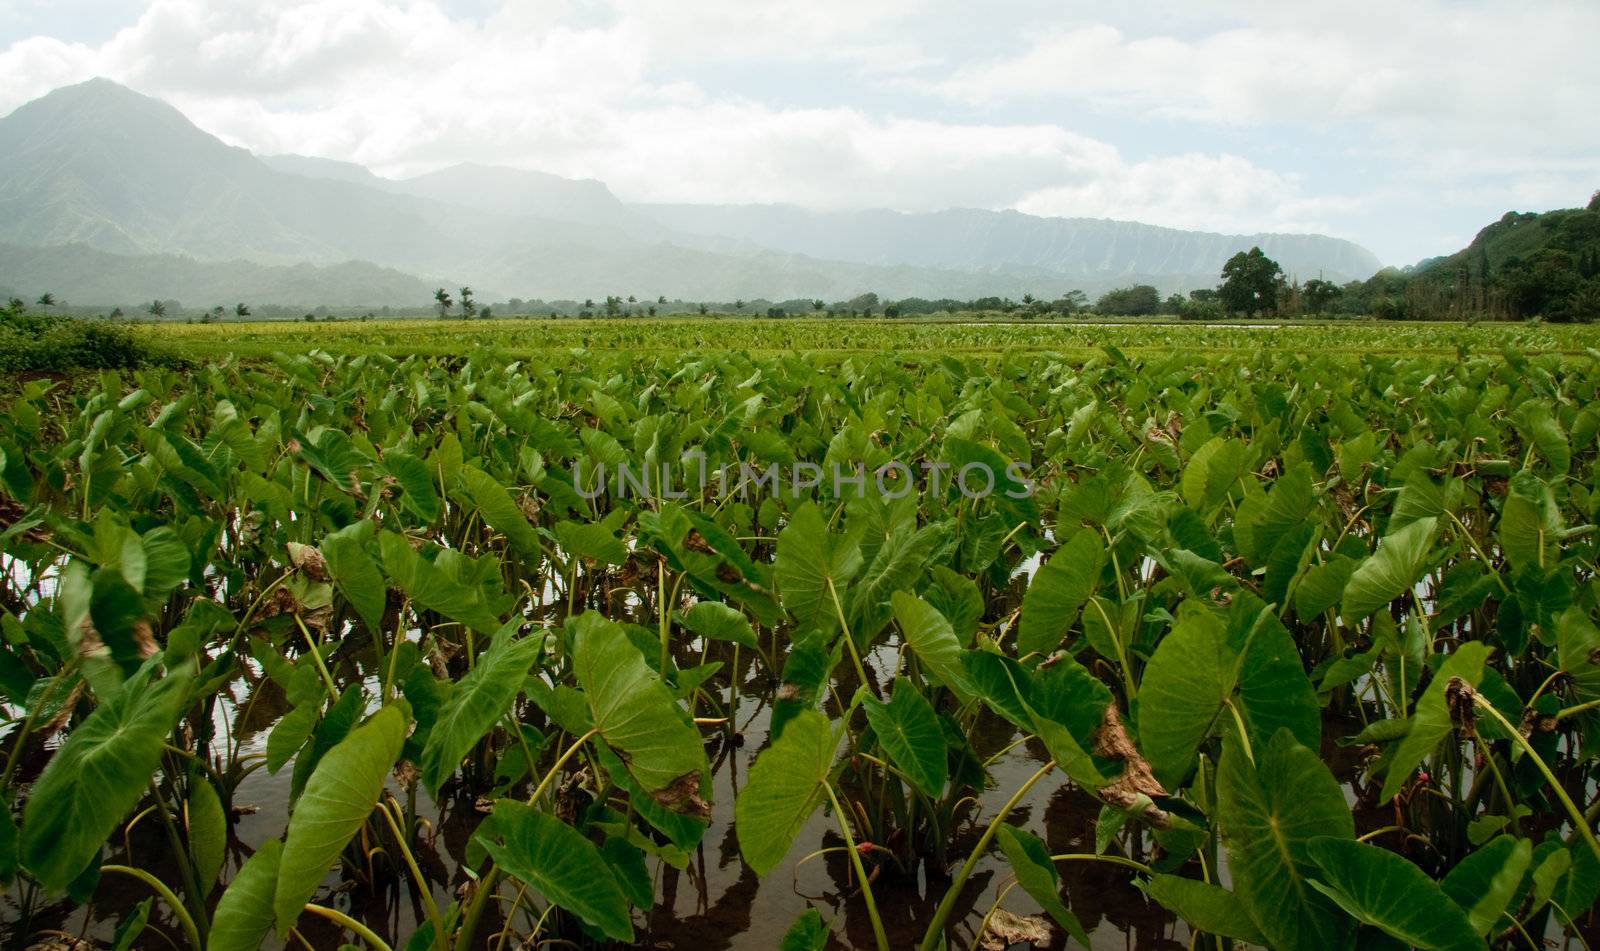 Taro plants in Hanalei valley by steheap